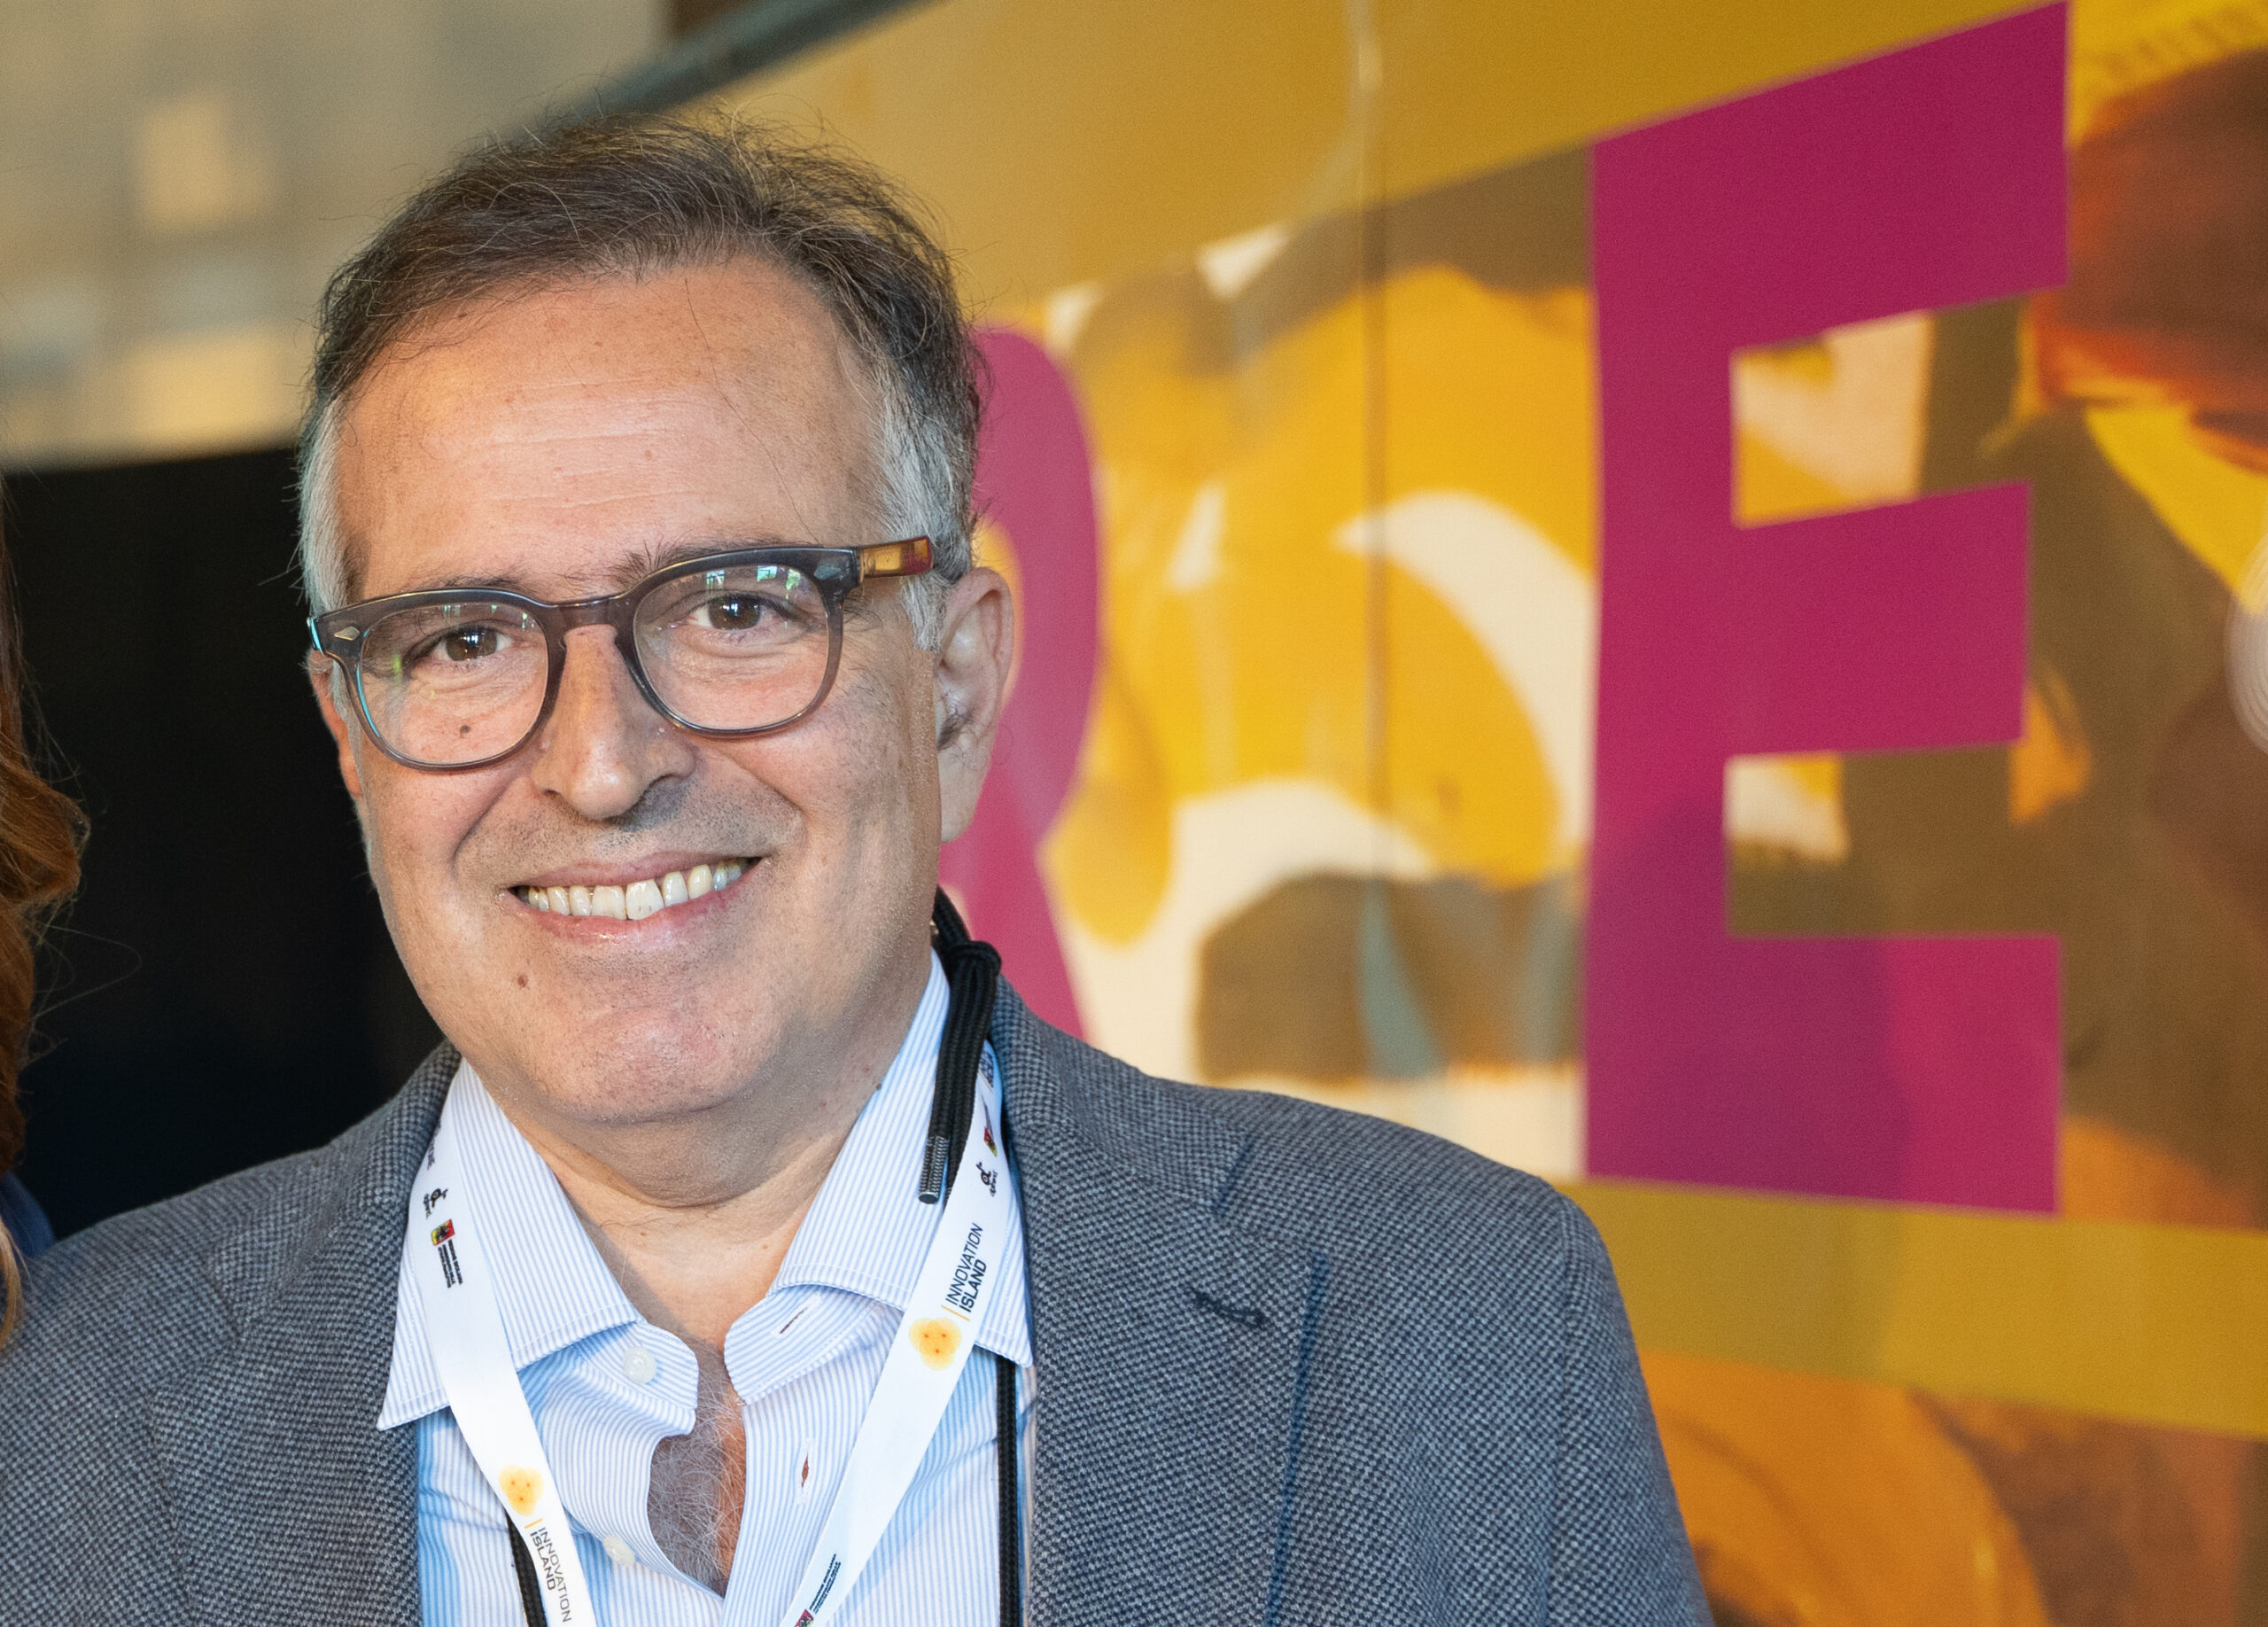 Biagio Semilia è il nuovo Presidente della Federazione Editori Digitali